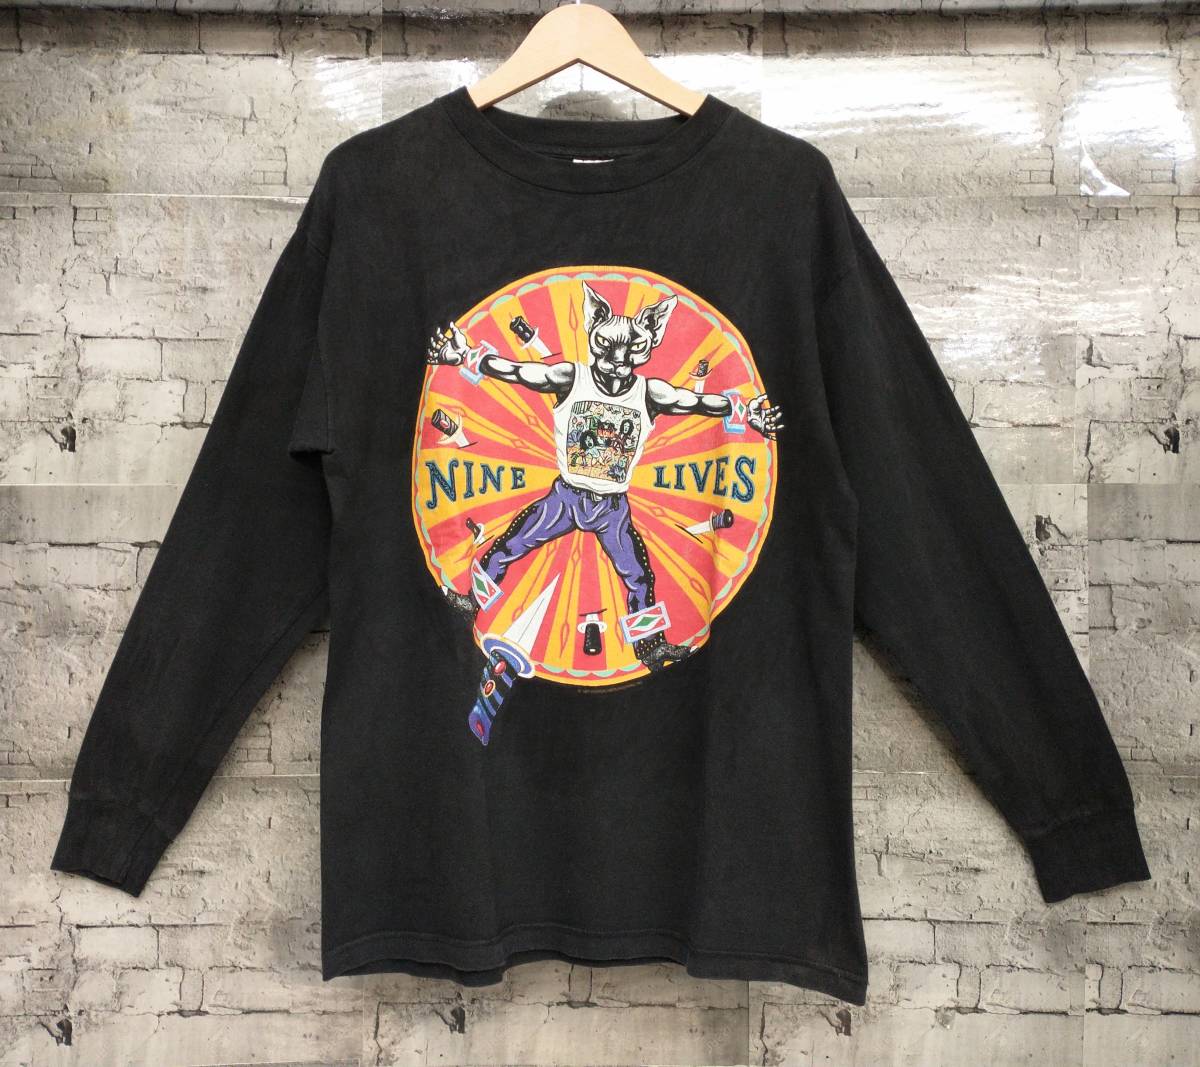 90s USA製 Murina AEROSMITH 1997 NINE LIVES エアロスミス ナイン・ライヴズ バンT 長袖Tシャツ サイズM ブラック 店舗受取可